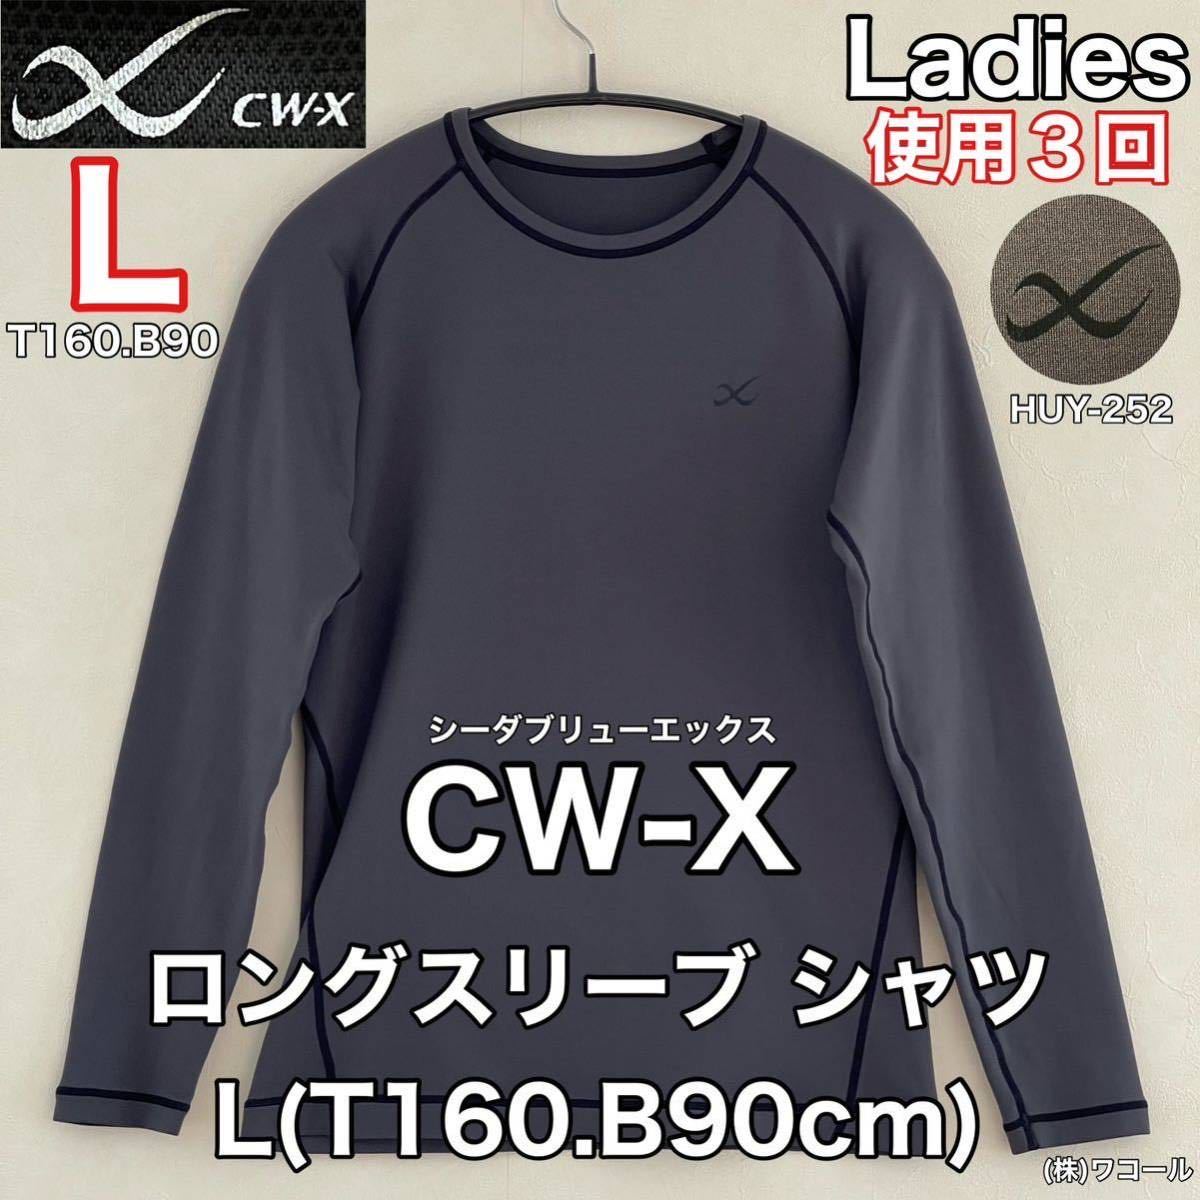 超美品 CW-X(シーダブリューエックス)レディース women ロングスリーブ シャツ L(T160.B90cm)使用３回 グレー スポーツ HUY-252 株ワコール_画像1